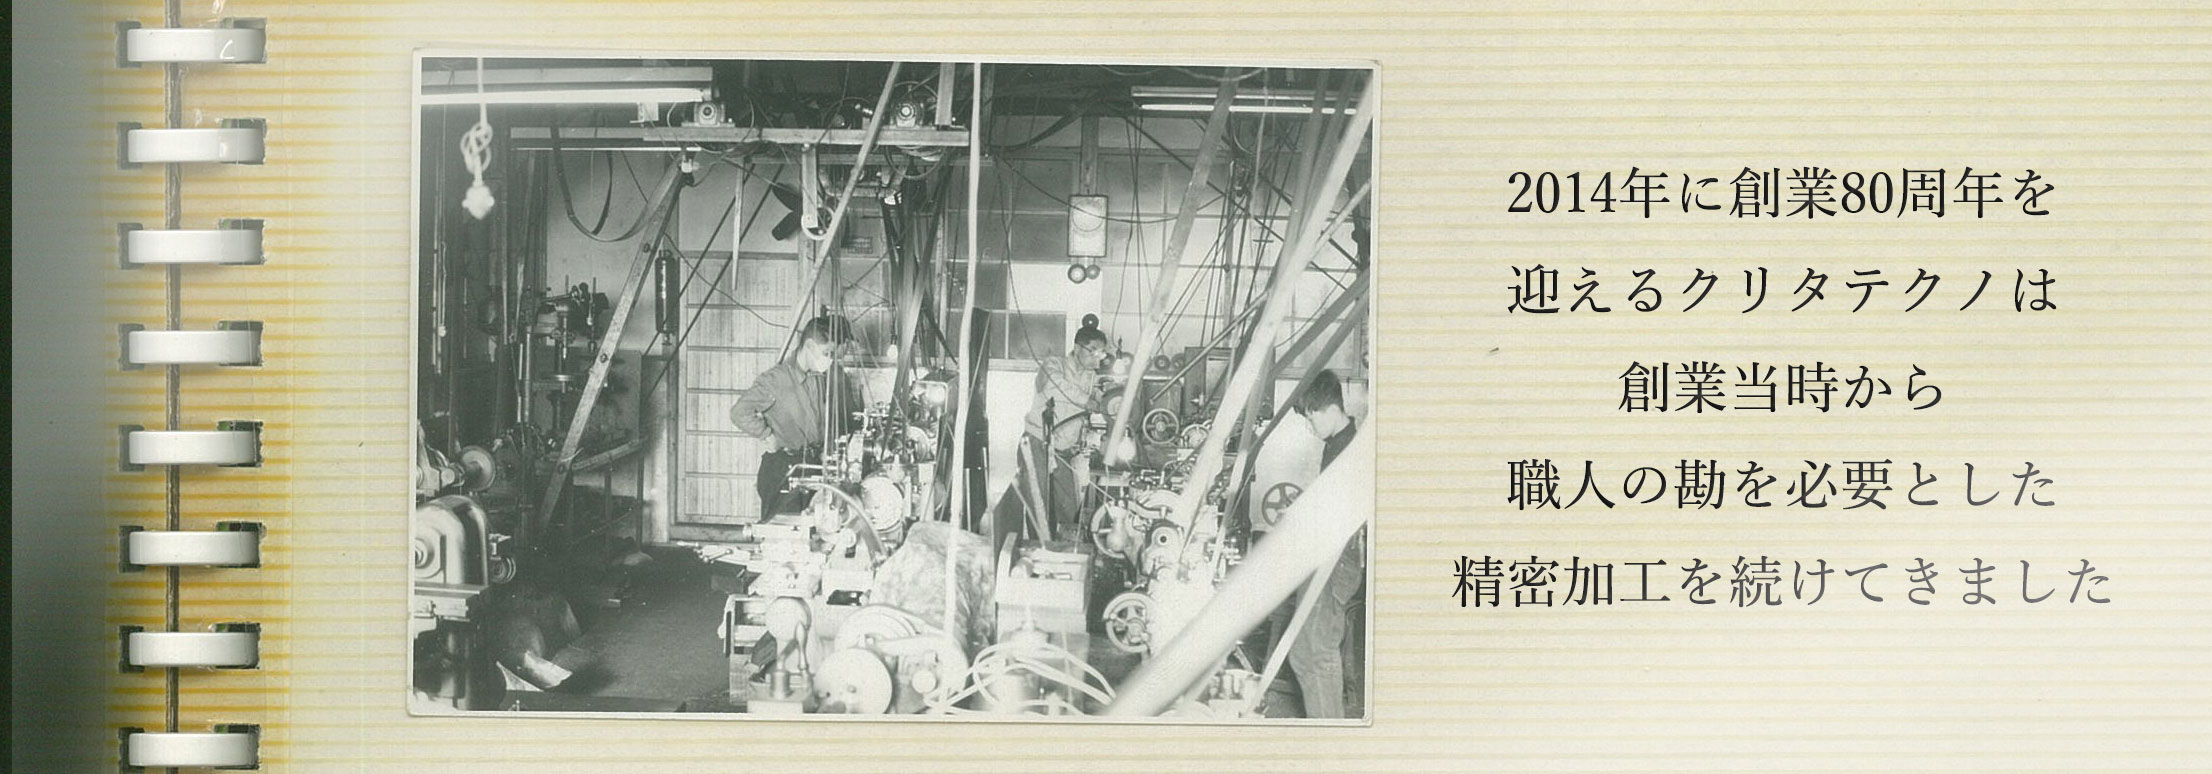 昭和25年頃、戦後再建時の工場内